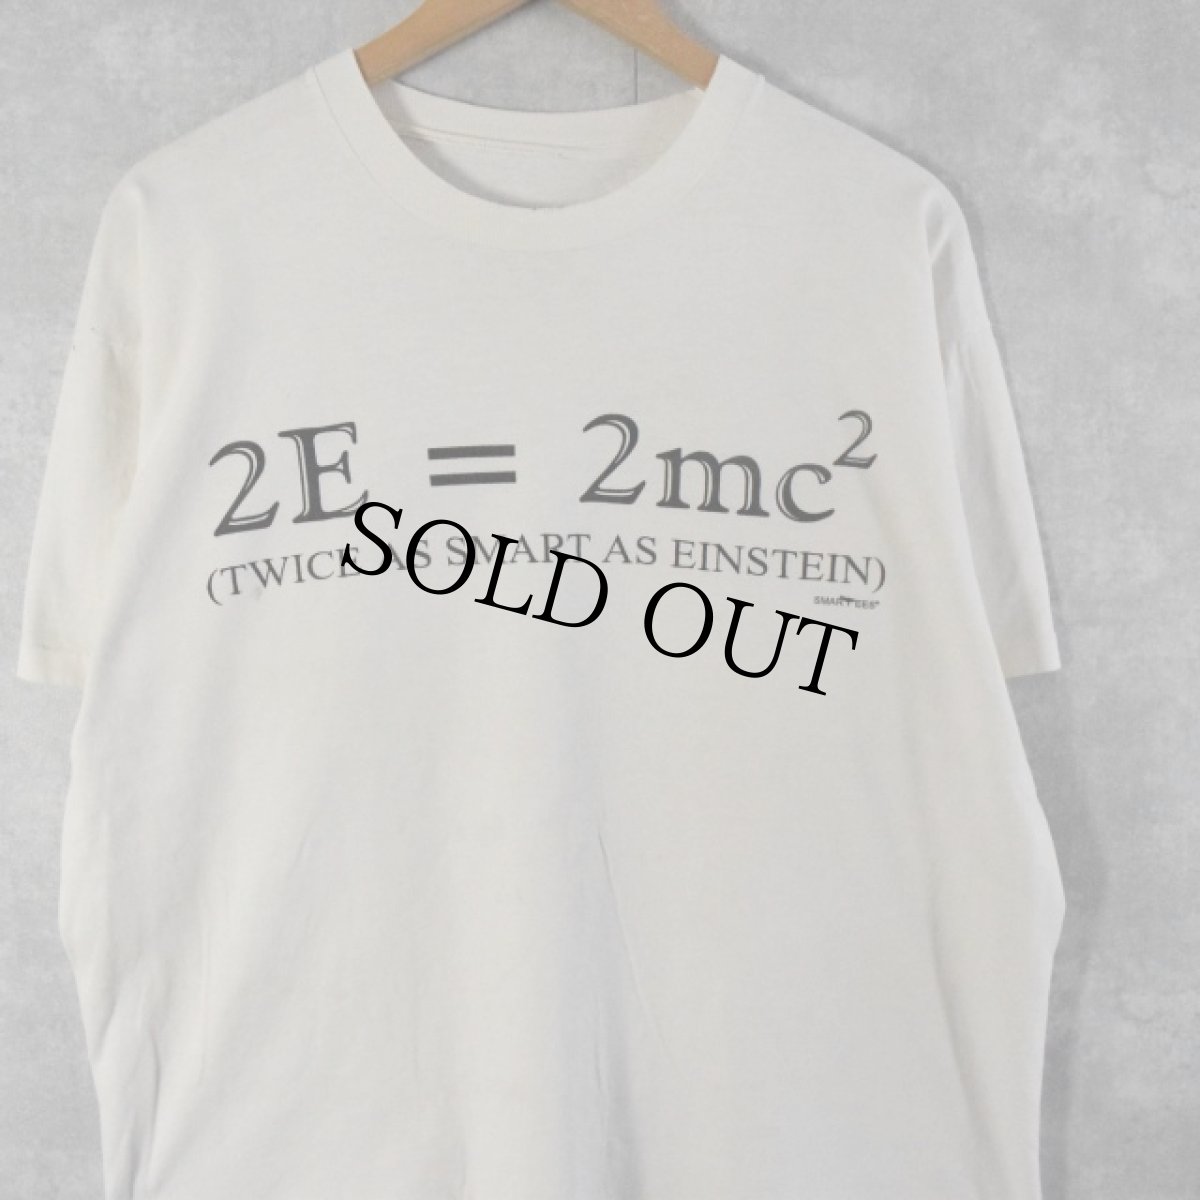 画像1: 90's "2E=2mc2 TWICE AS SMART AS EINSTEIN" 数式プリントTシャツ  (1)